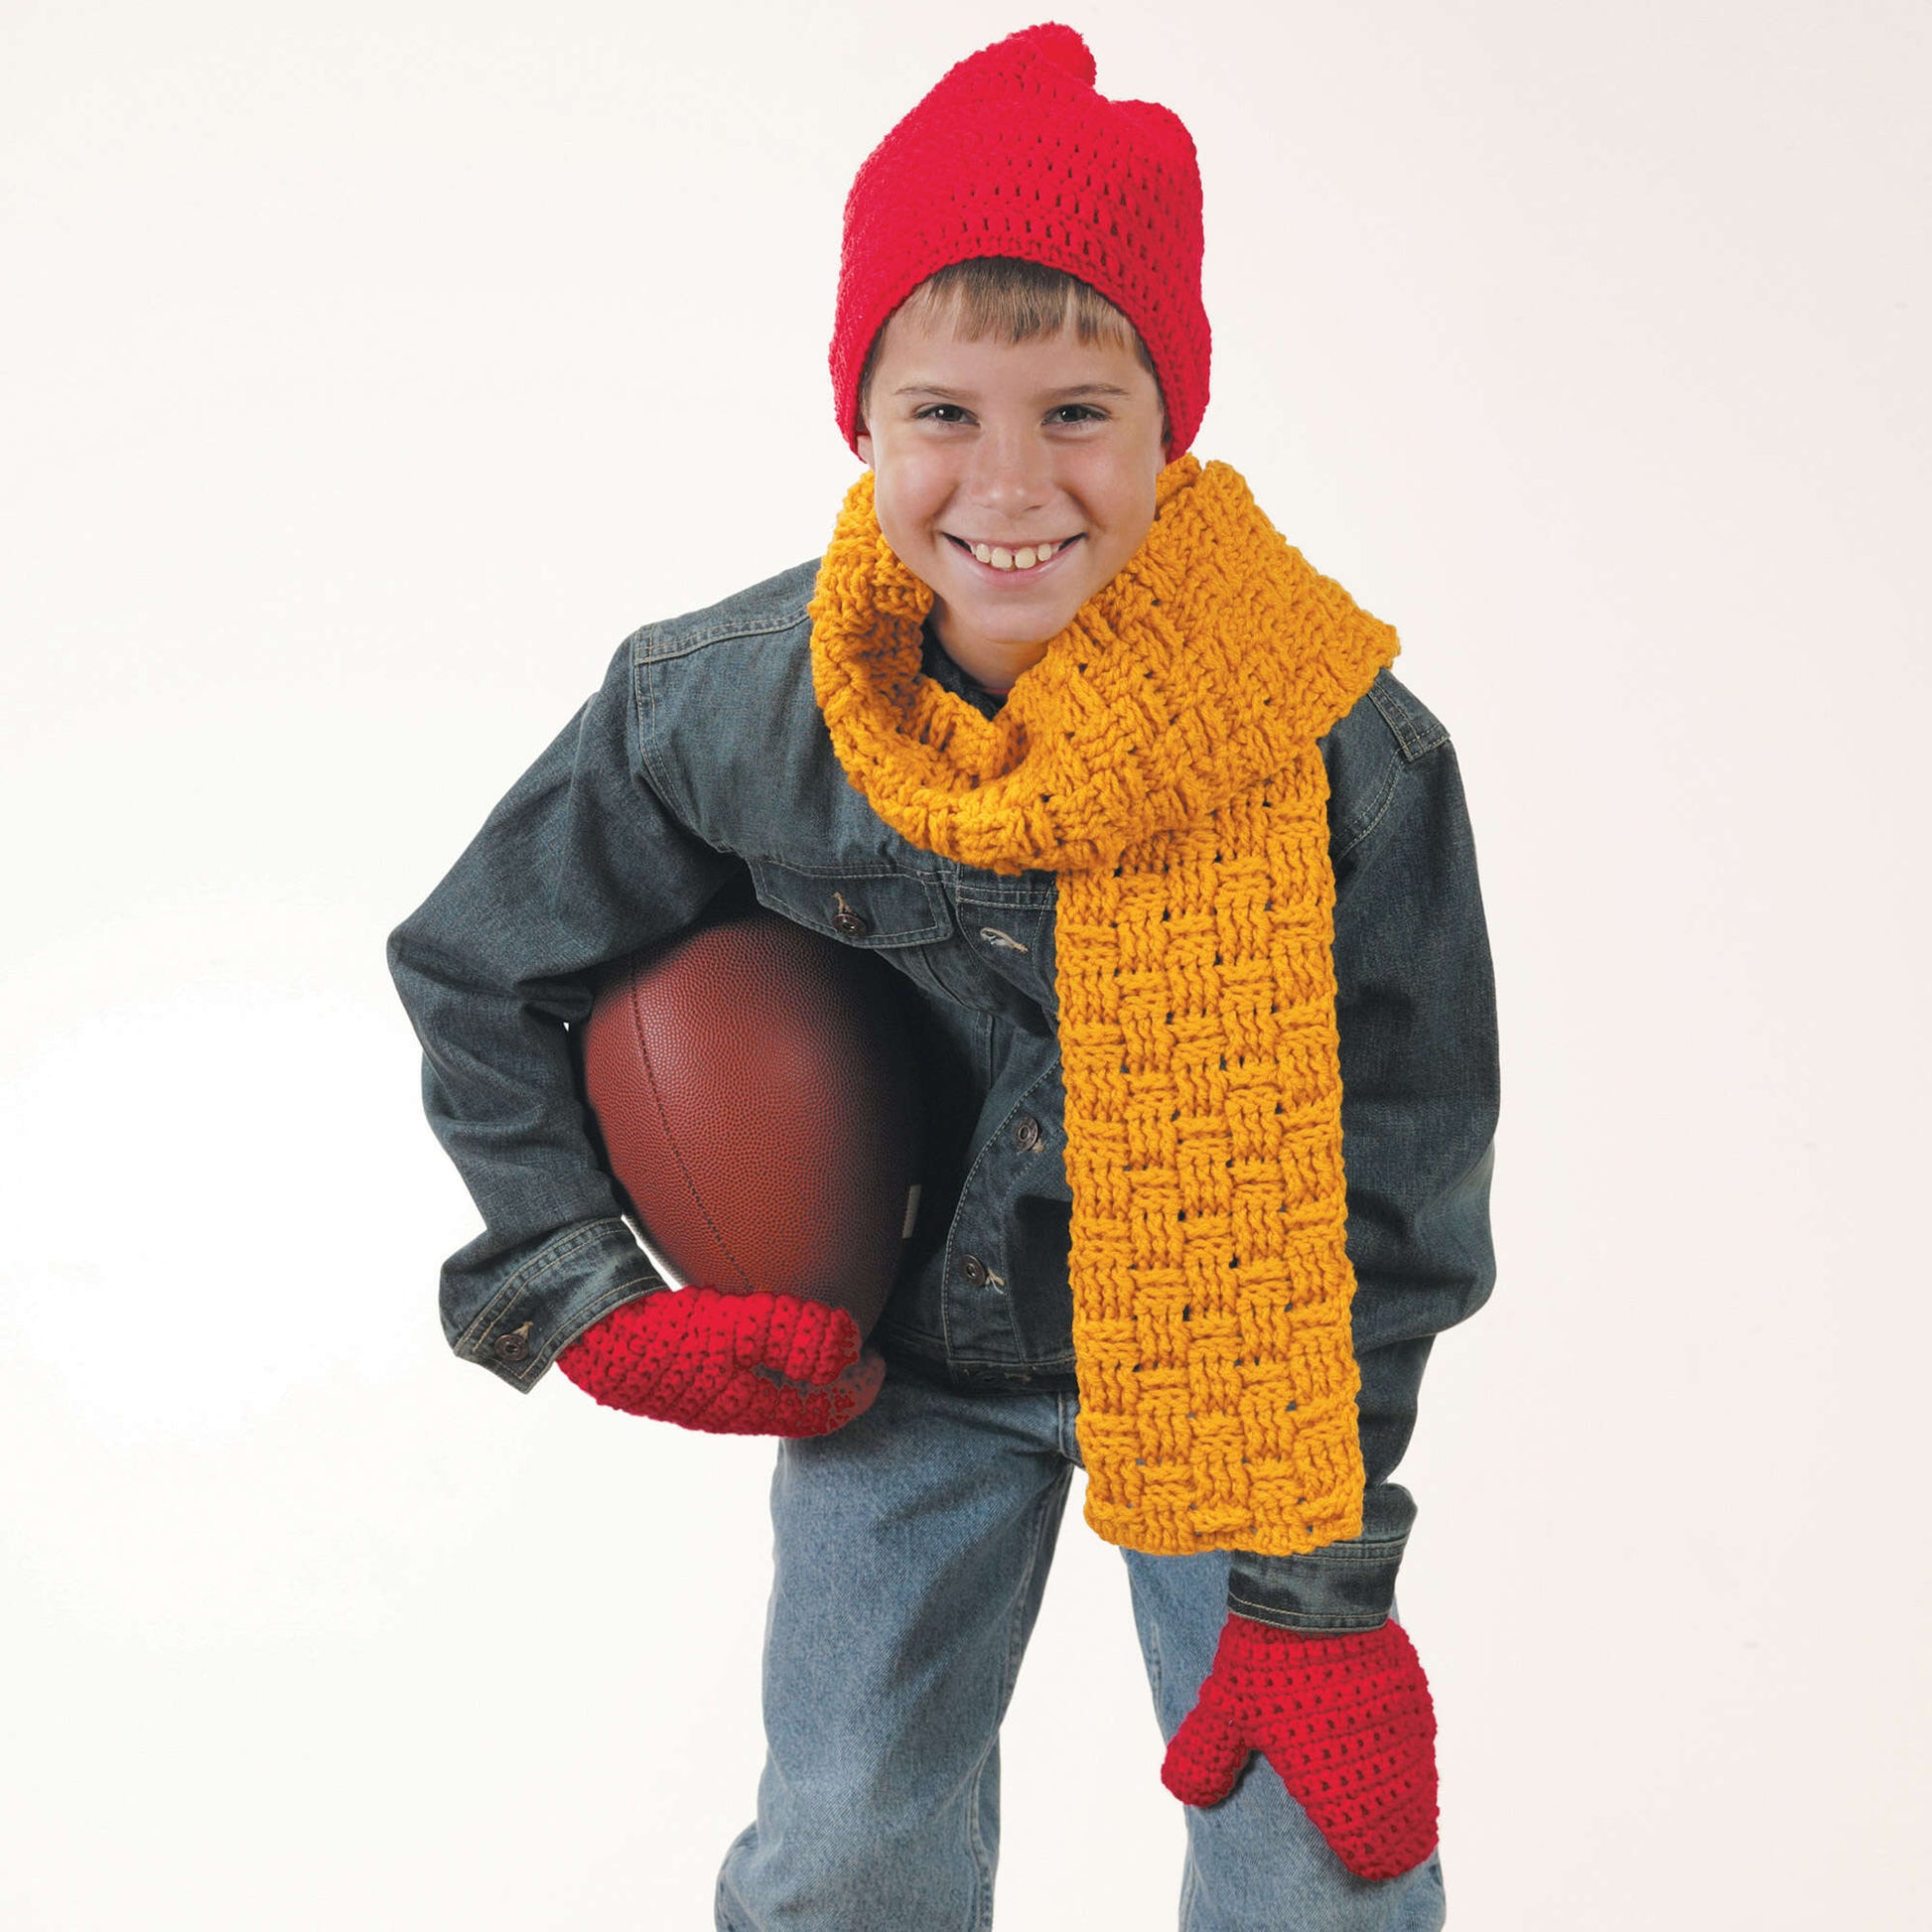 Free Red Heart Winter Wear Accessories Crochet Pattern